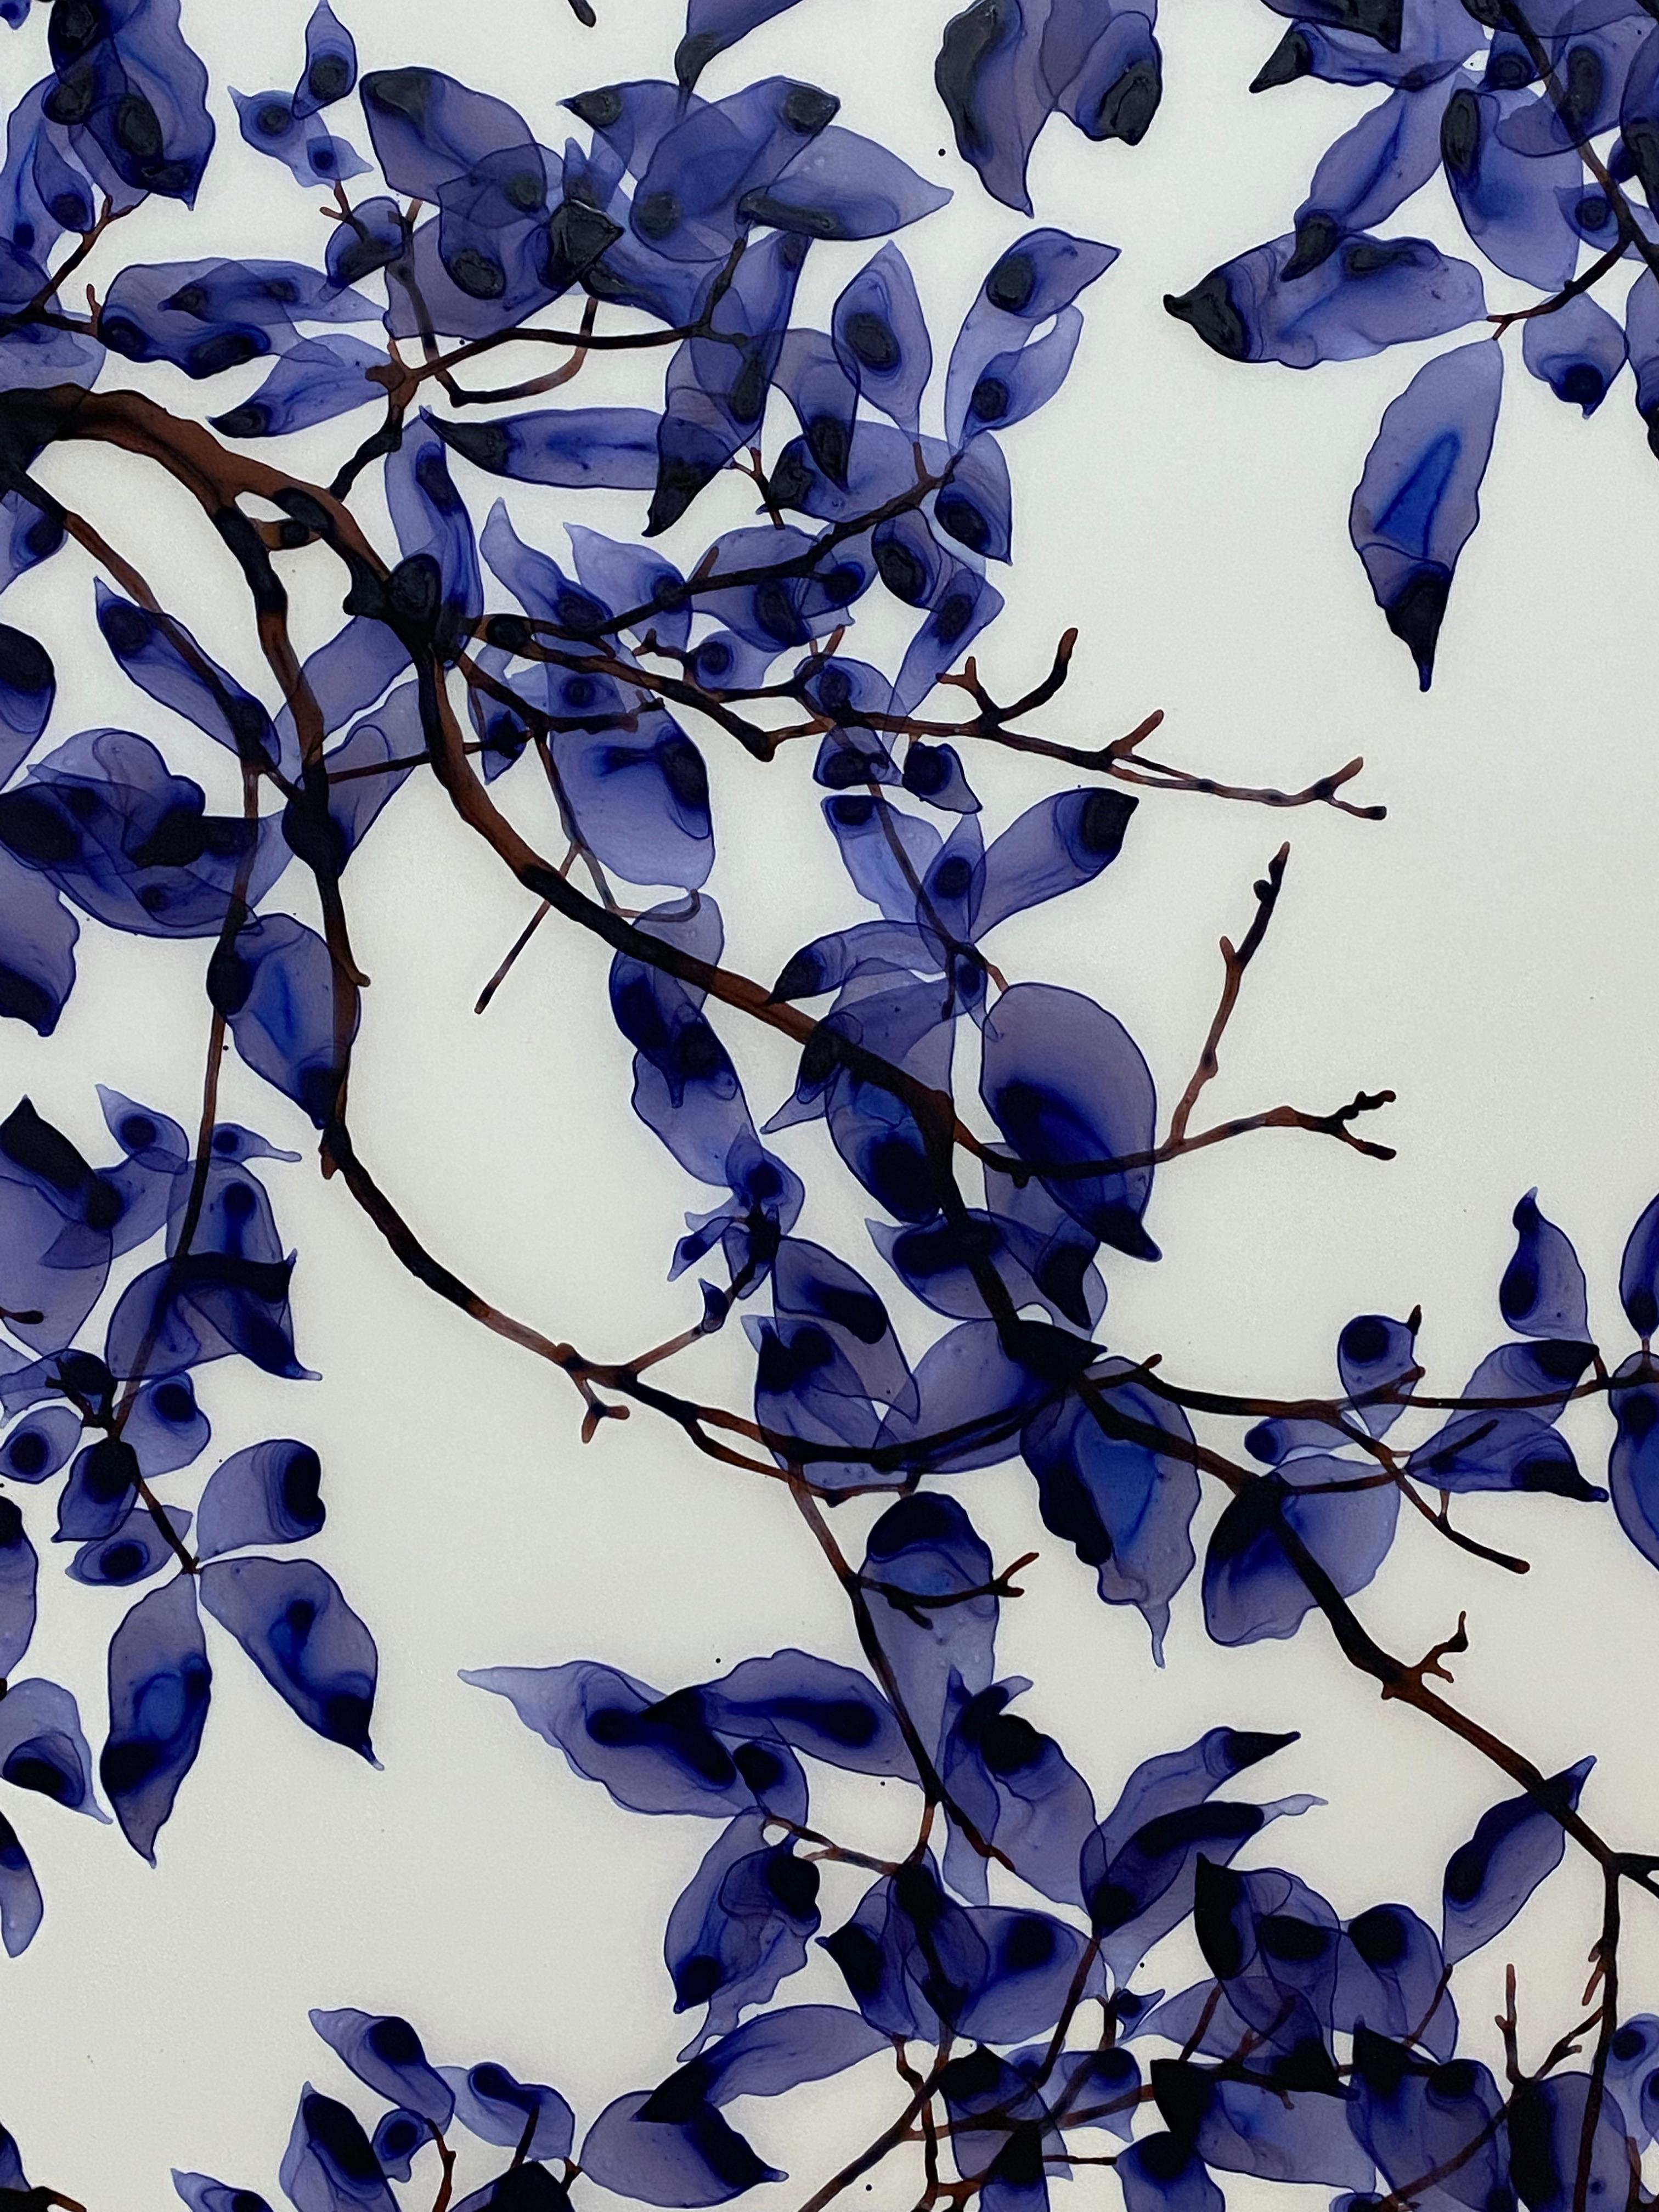 Abat-jour Twilight, bleu violet violet, branches d'arbres botaniques en caoutchouc, mylar blanc - Contemporain Painting par Jackie Battenfield